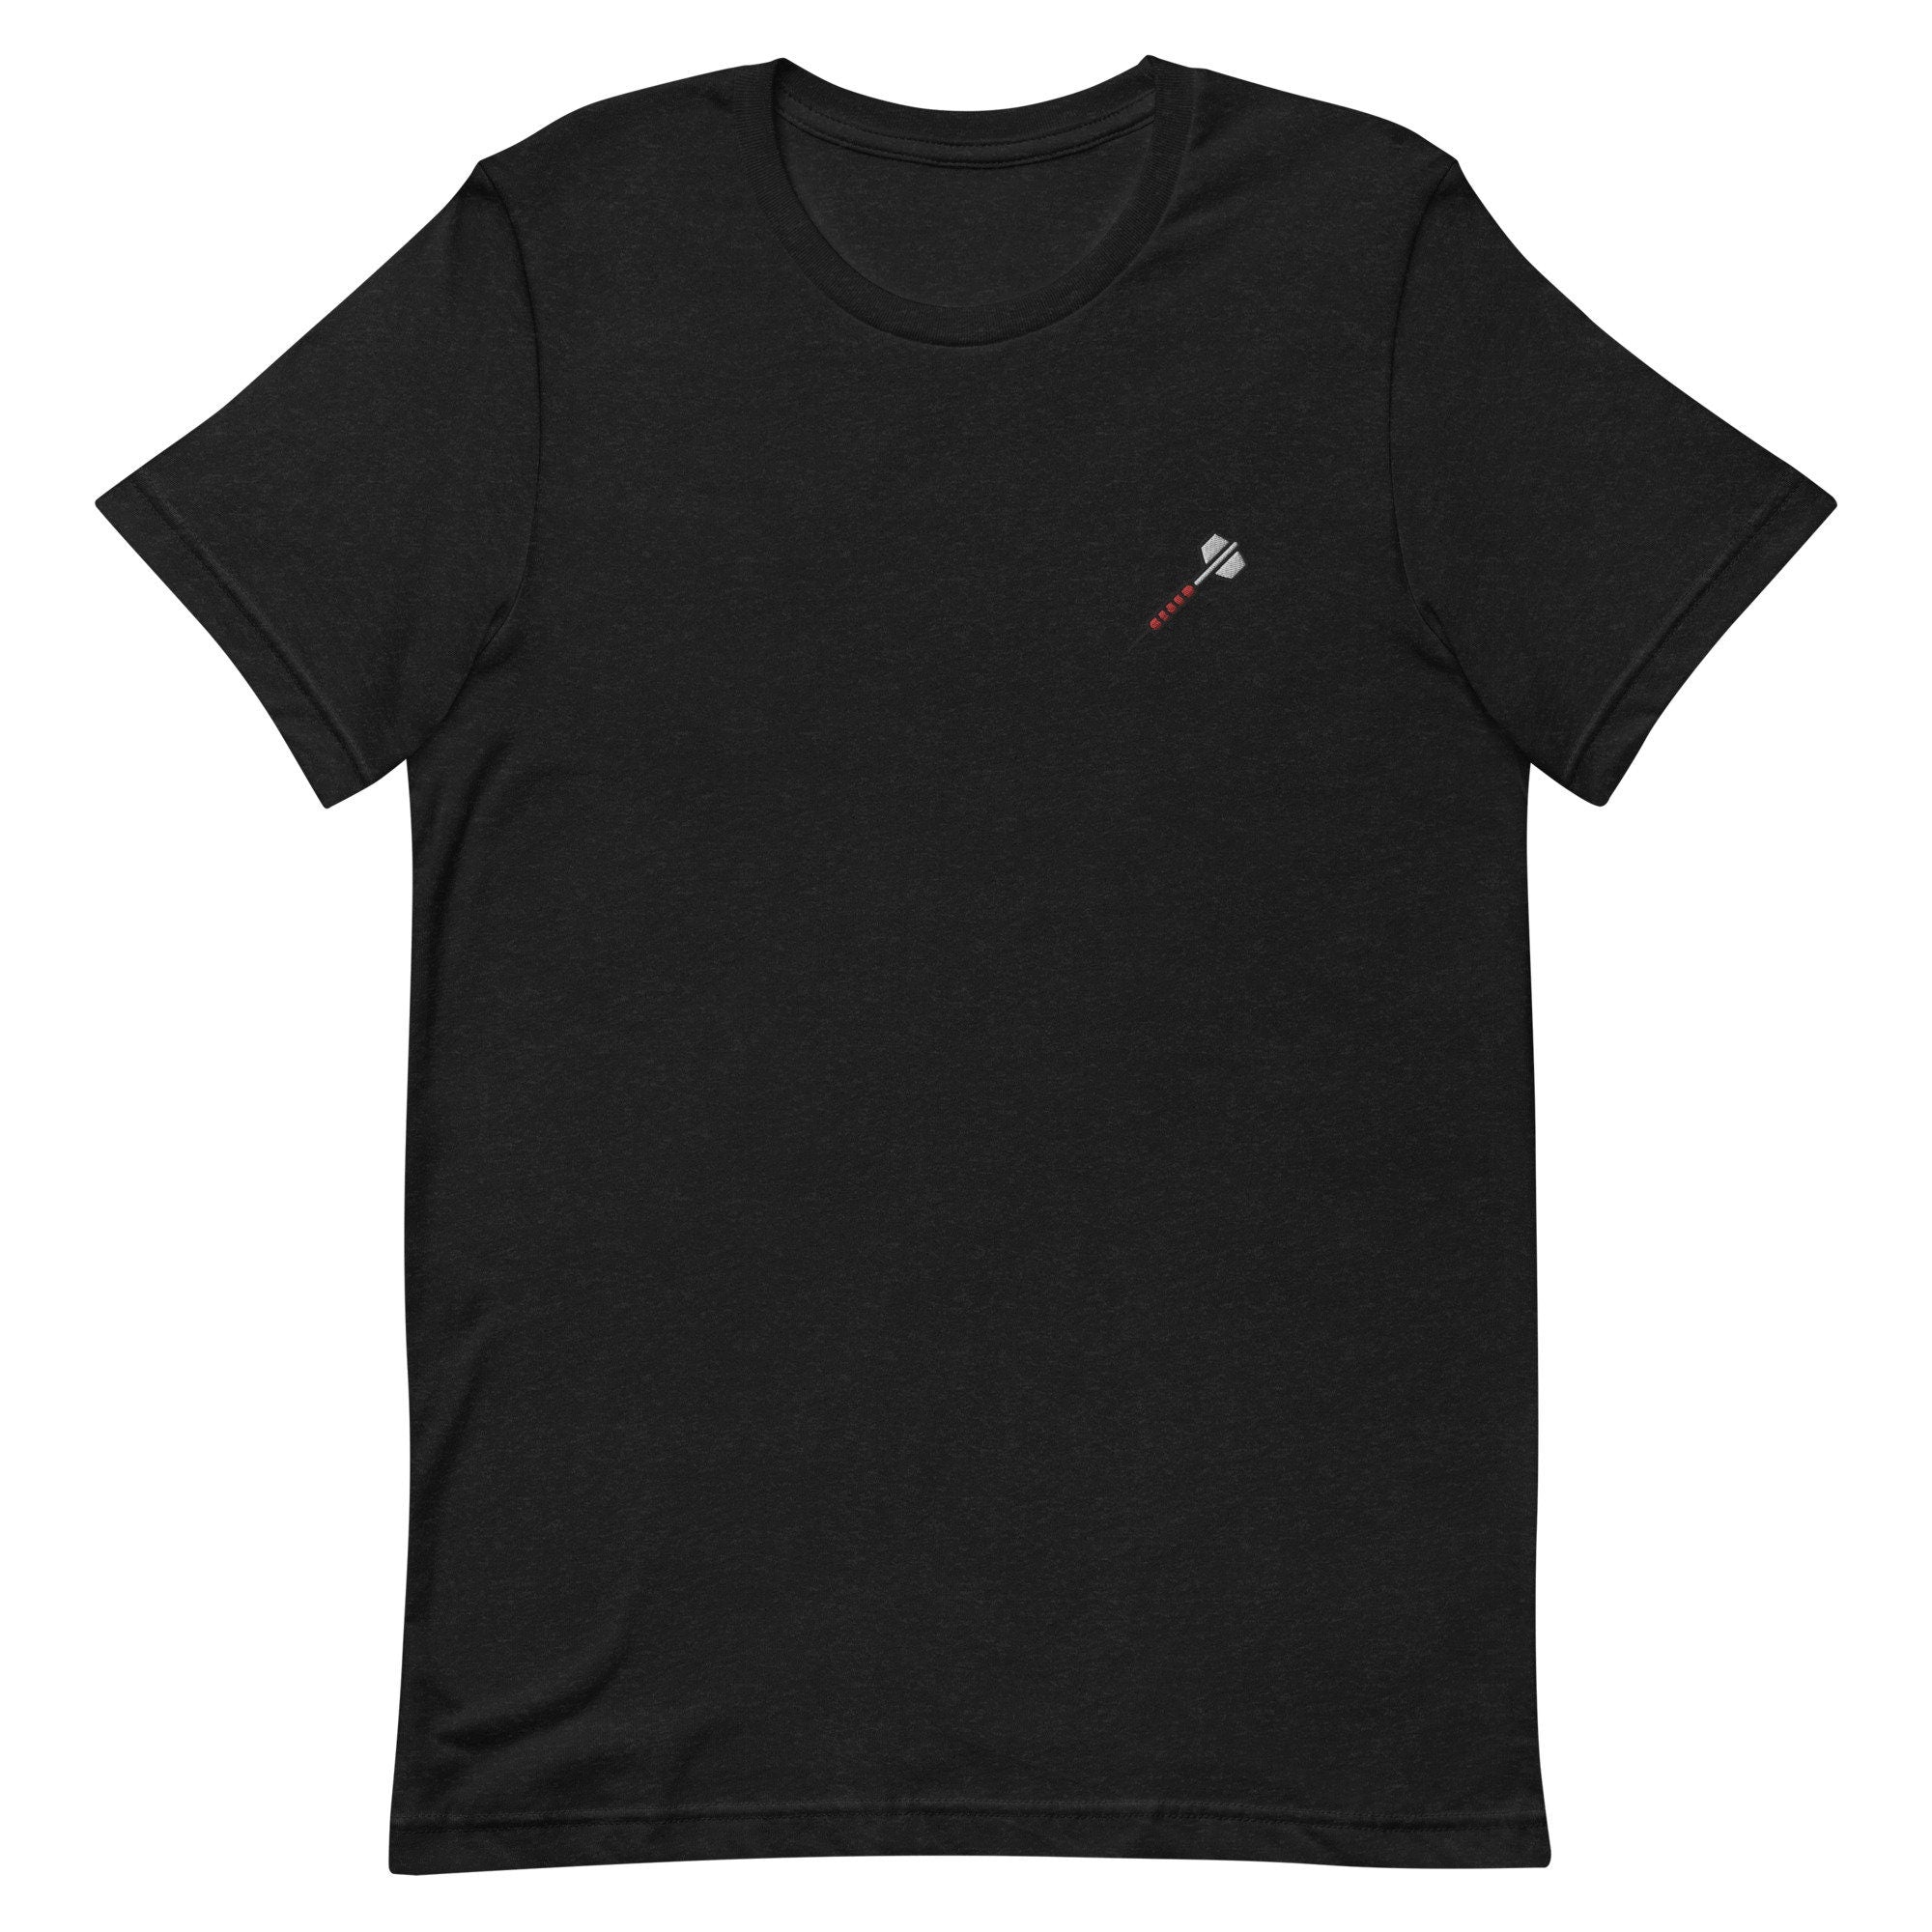 Dart Premium Men's T-Shirt, Embroidered Men's T-Shirt Gift for Boyfriend, Men's Short Sleeve Shirt - Multiple Colors